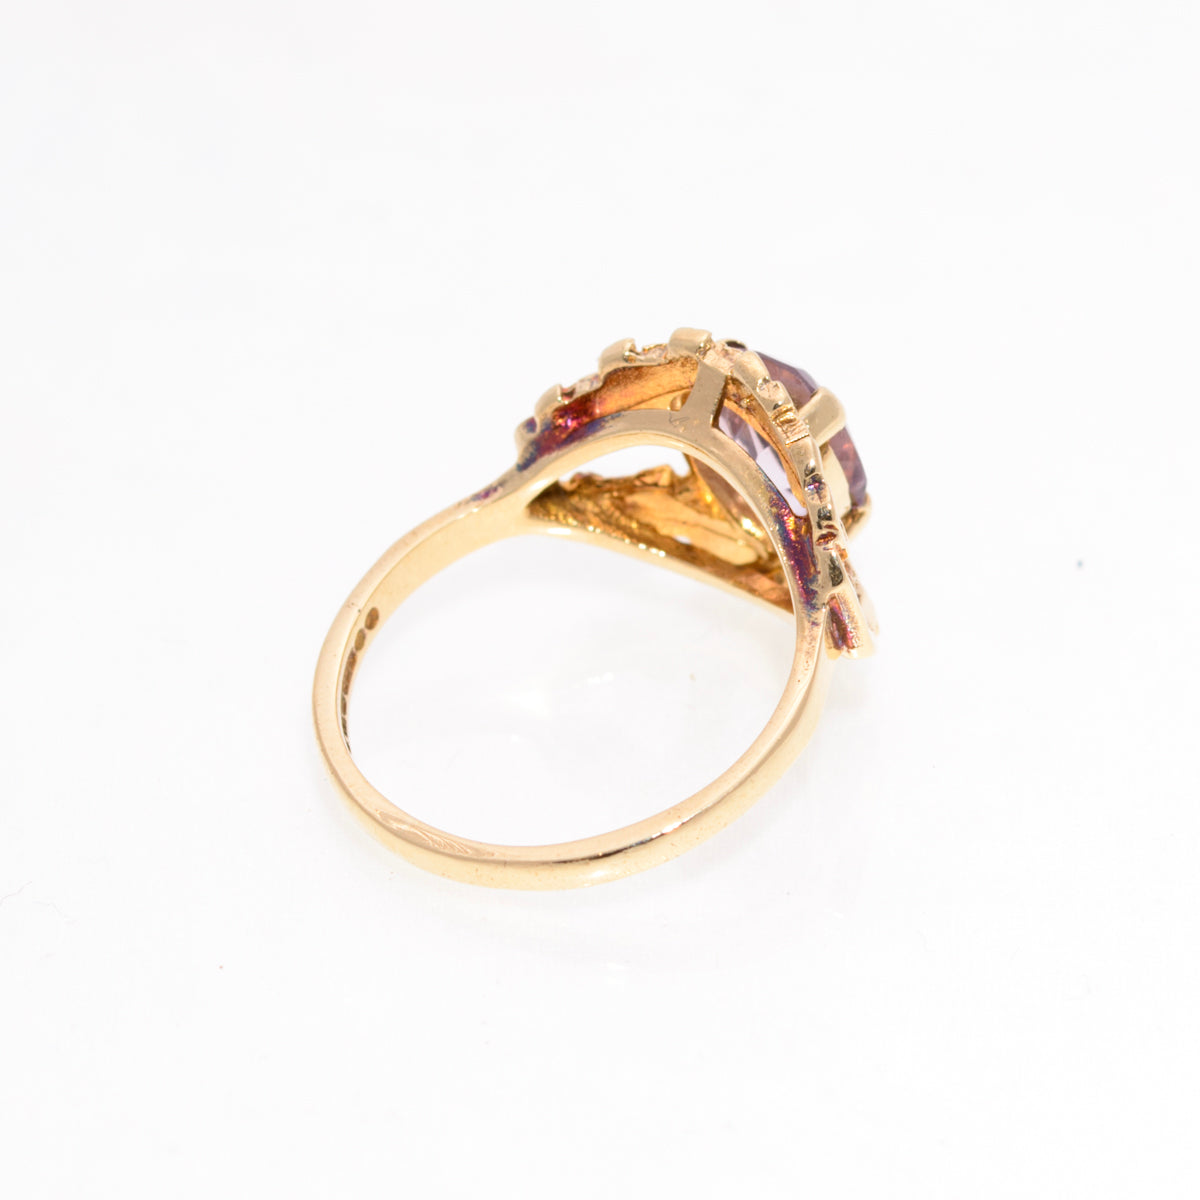 Vintage Brutalist Design 9ct Gold 'Eye' Ring Rose de France Amethyst Gemstone (A1441)